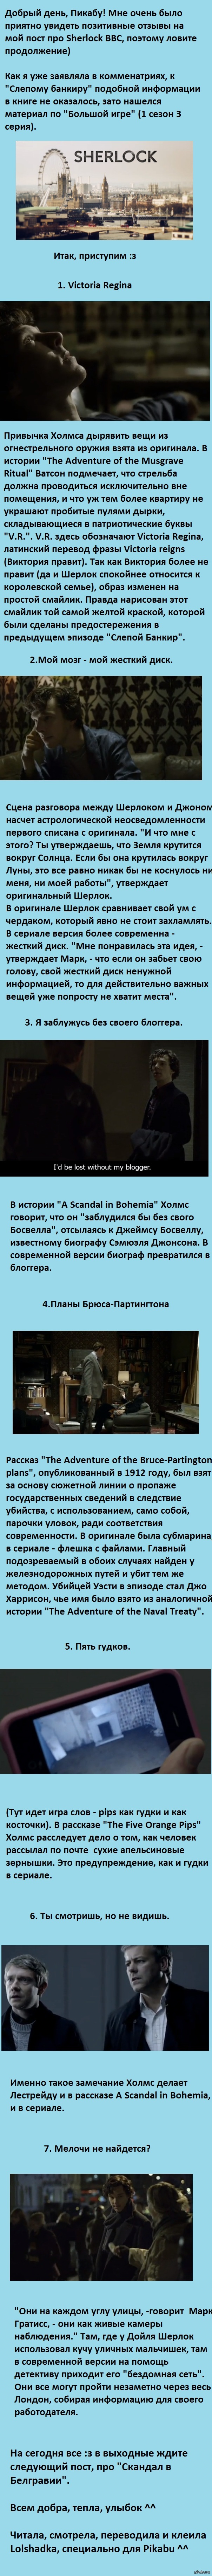 Sherlock BBC,     .  2     - <a href="http://pikabu.ru/story/sherlock_bbc_skhodstva_i_razlichiya_s_originalom_1901535#comments">http://pikabu.ru/story/_1901535</a>